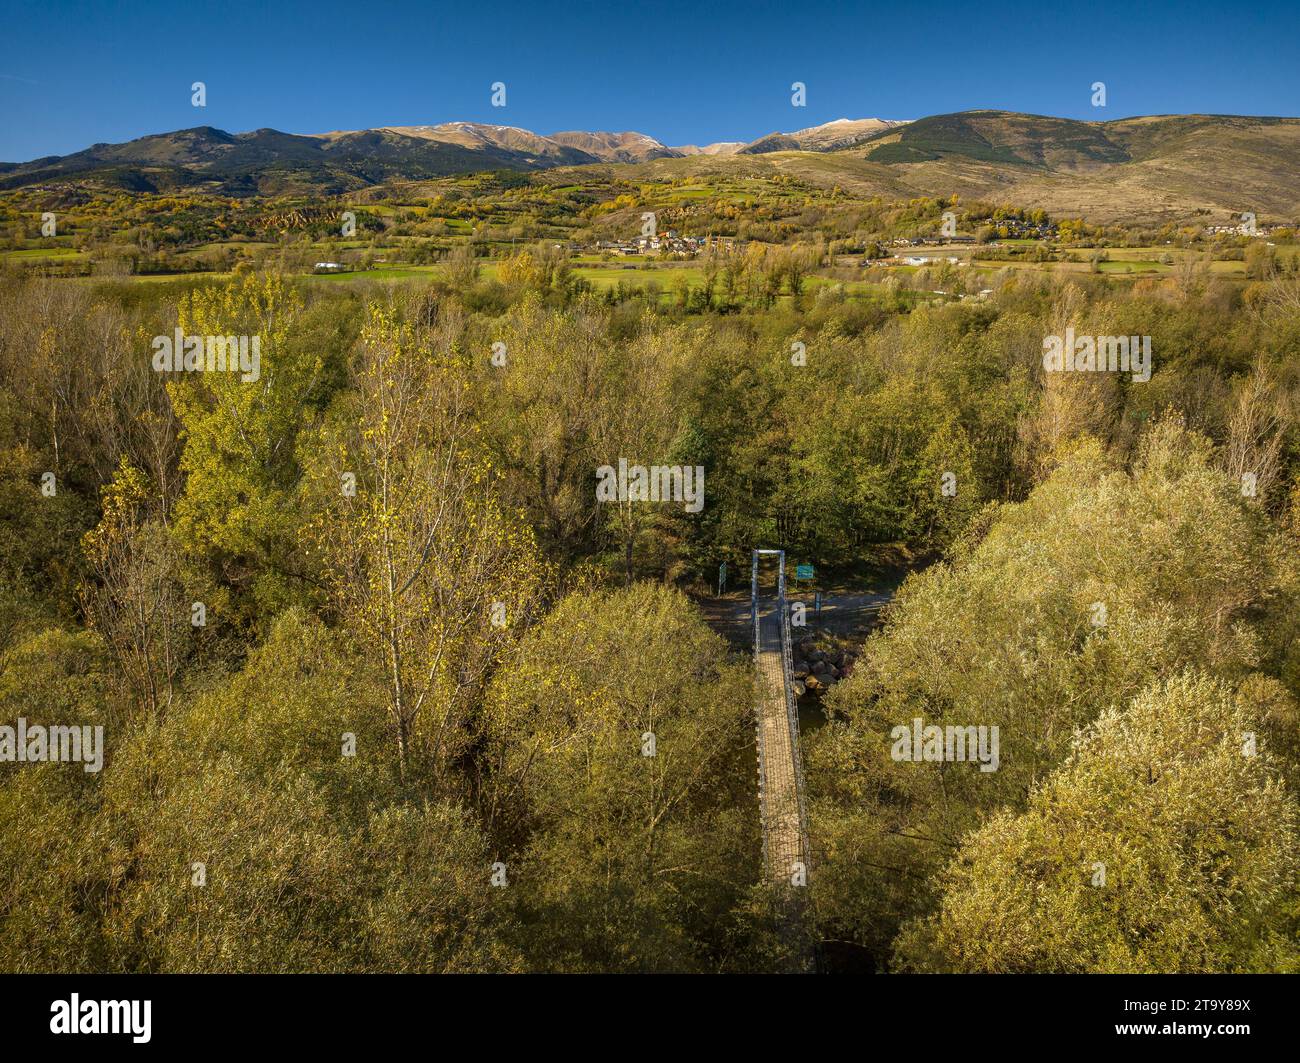 Vue aérienne de la passerelle simple du pont suspendu sur la rivière Segre en automne (Cerdanya, Catalogne, Espagne, Pyrénées) Banque D'Images